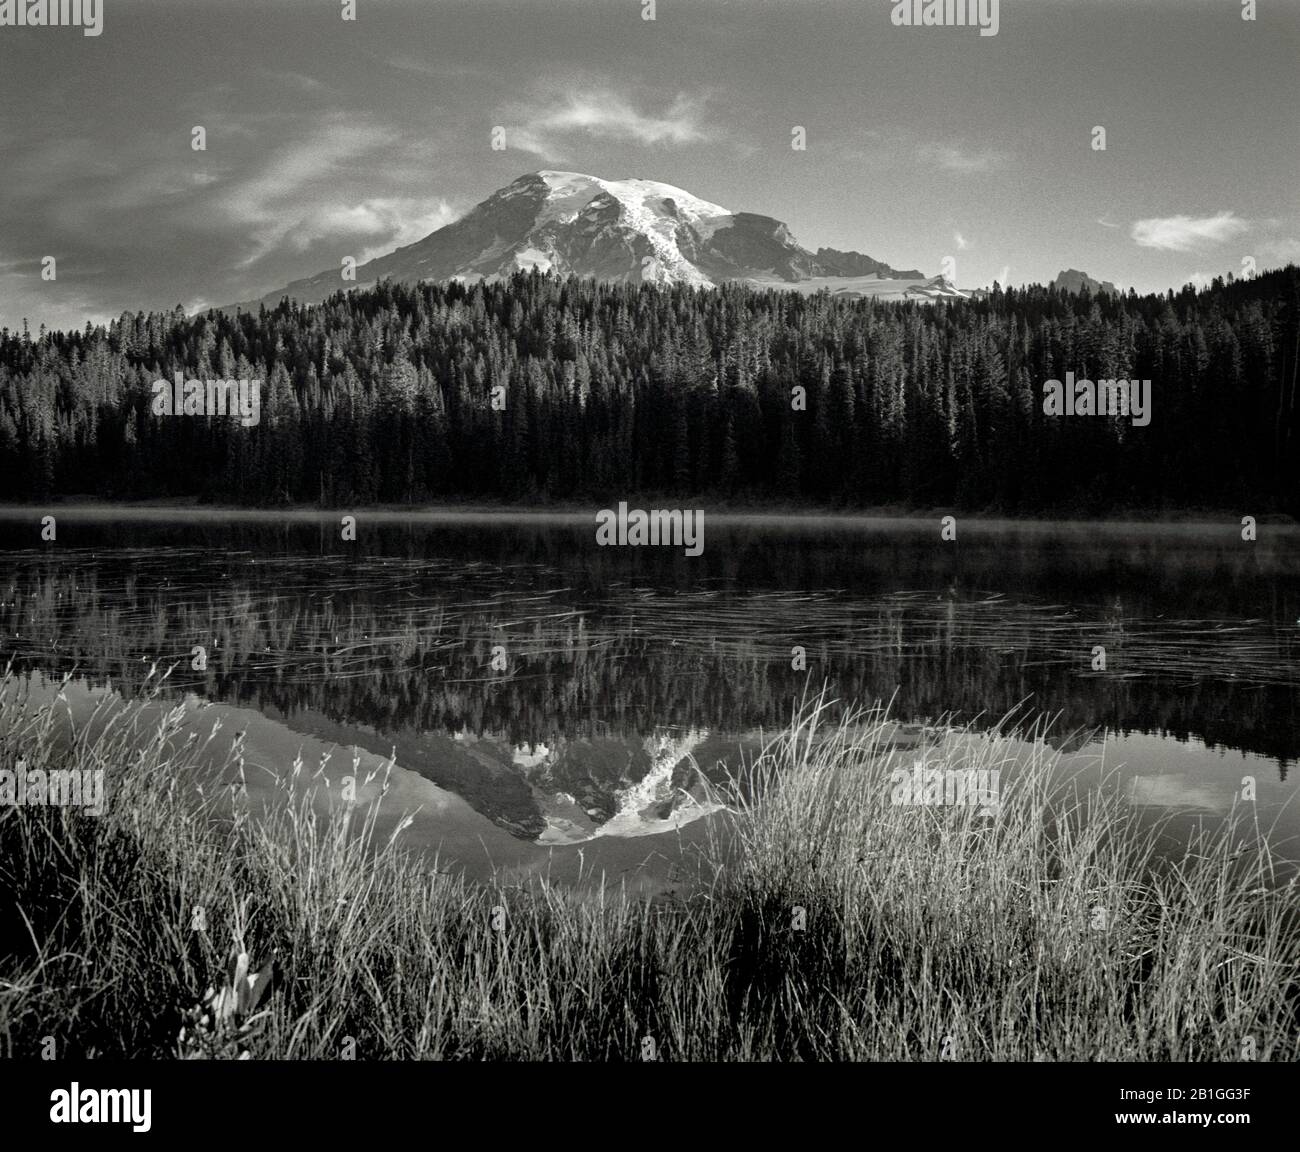 HB40006-00...WASHINGTON - el Monte Rainier se refleja en los lagos Reflection del Parque Nacional del Monte Rainier. Cámara Makina W67 y filtro amarillo nº 8. Foto de stock